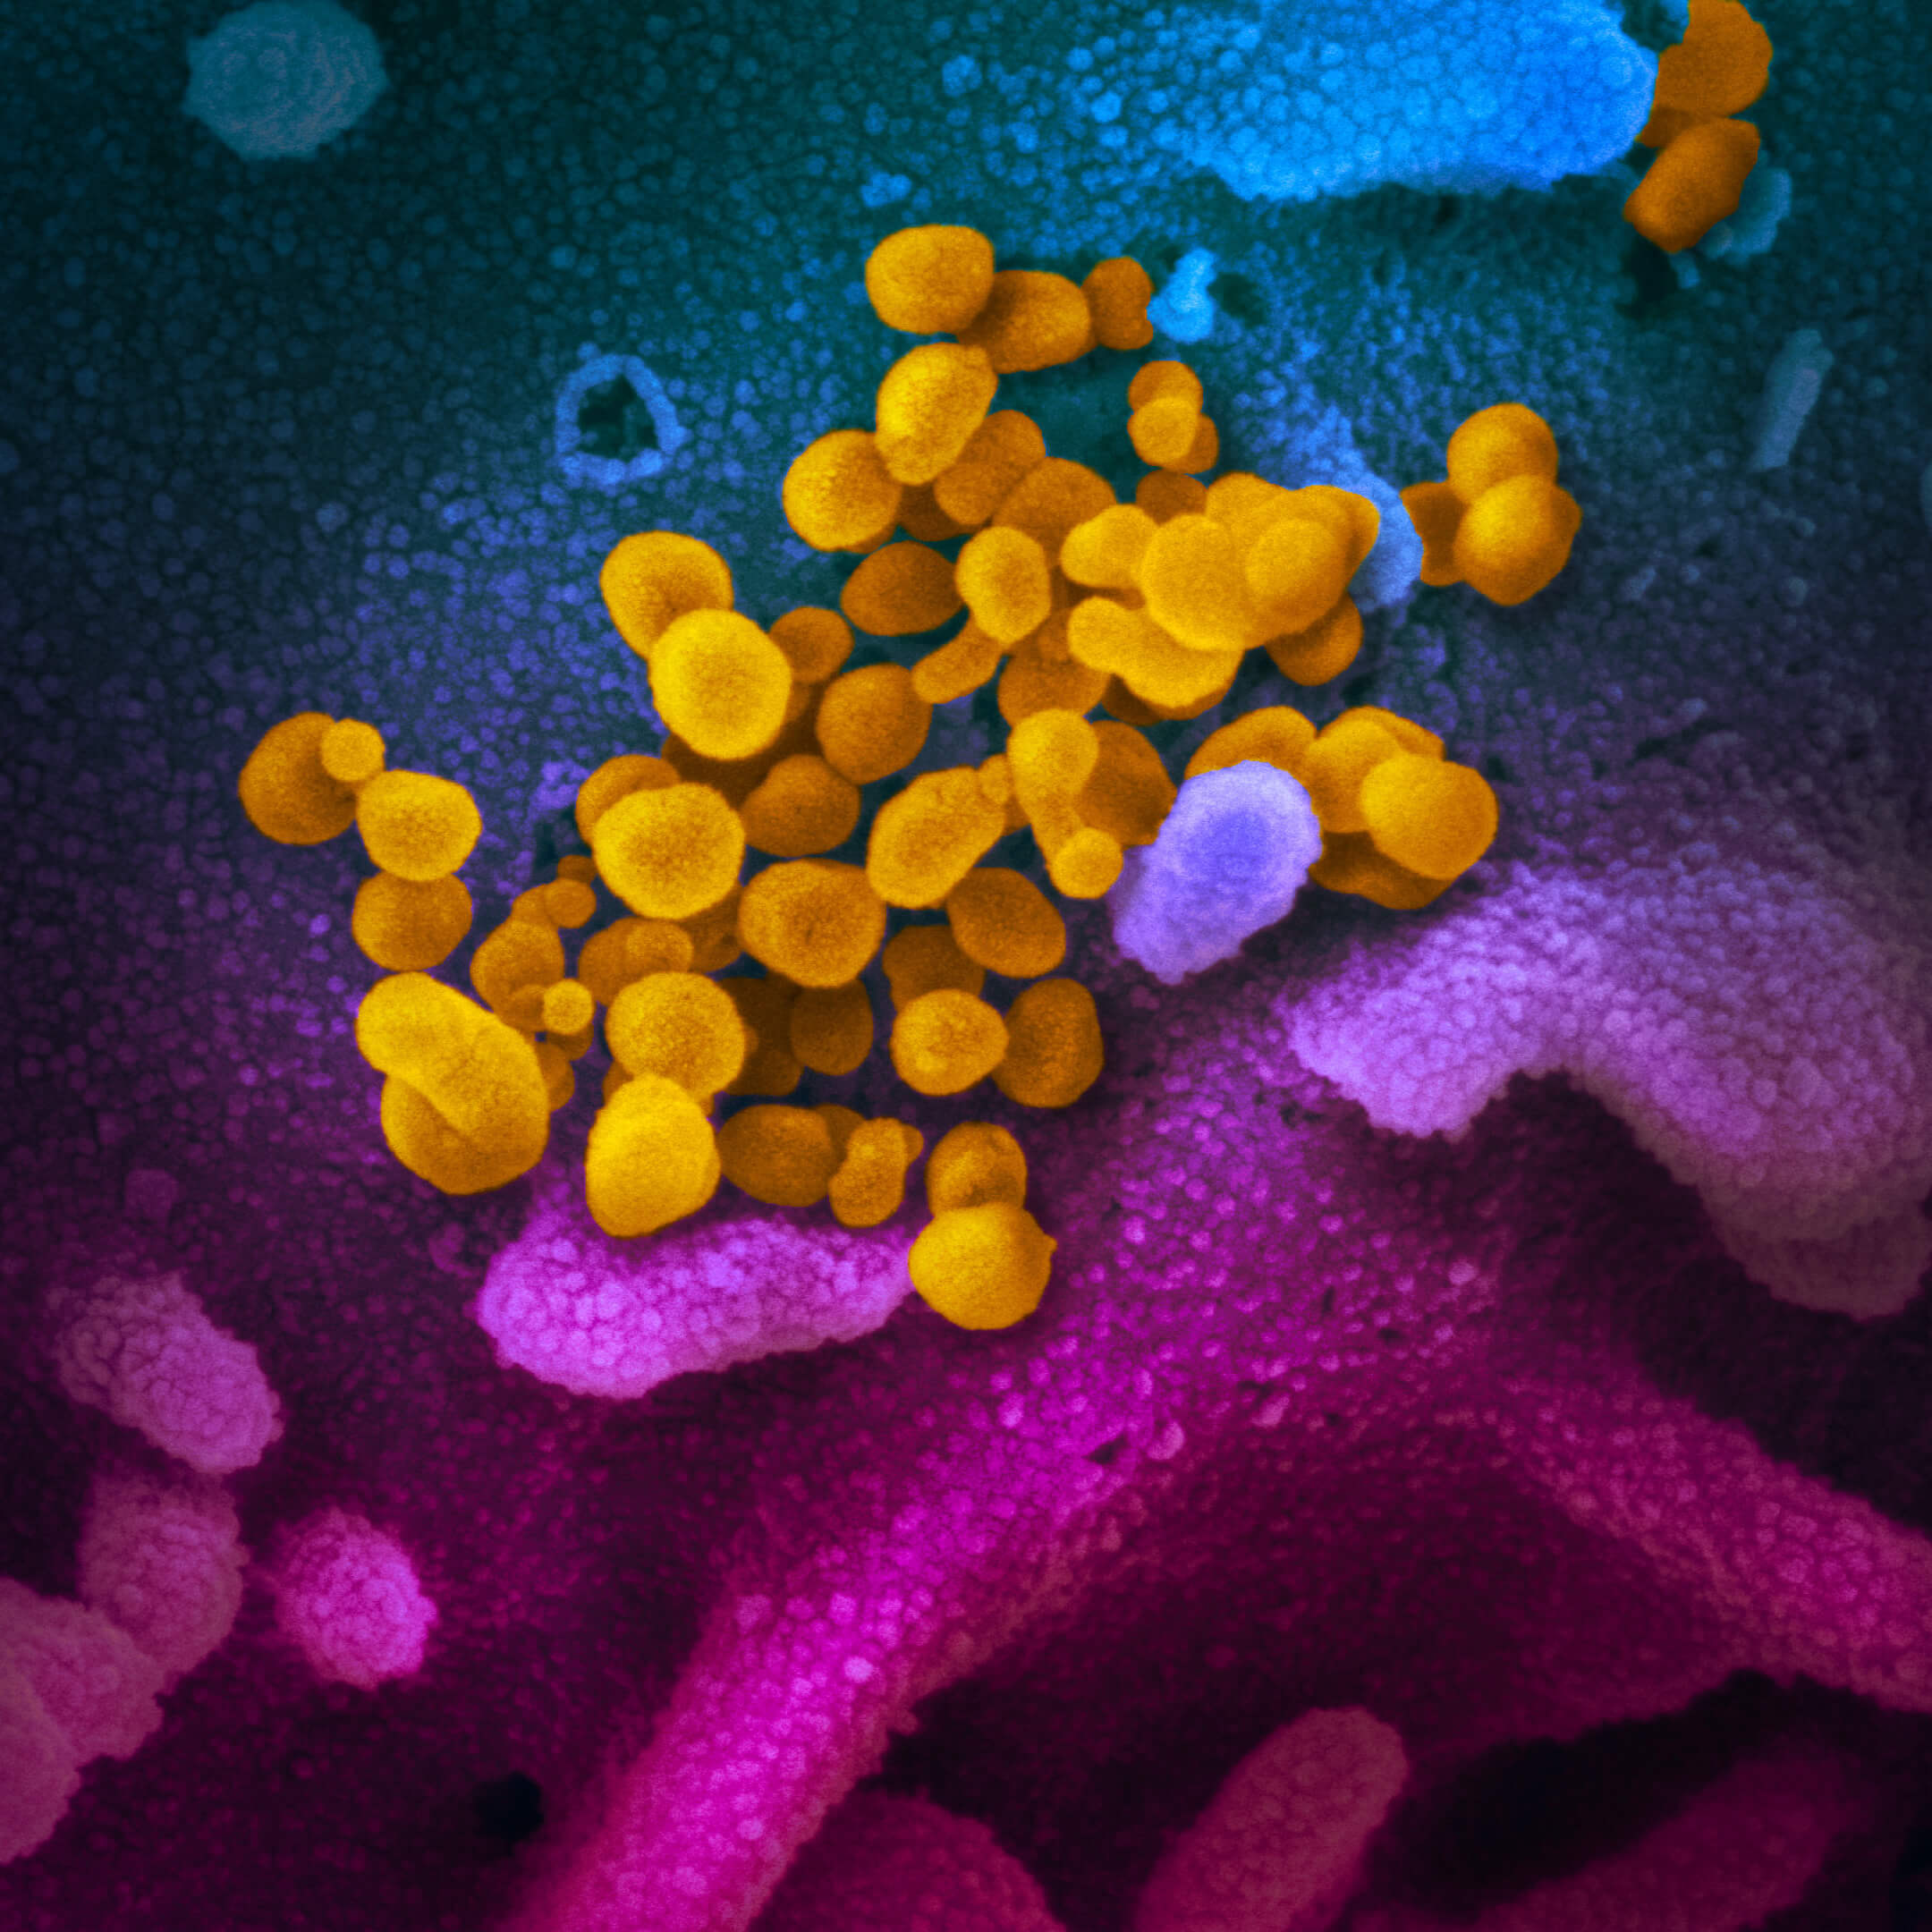 Изображение вируса SARS-CoV-2, полученное с помощью электронного микроскопа. Вирус раскрашен желтым цветом / ru.wikipedia.org